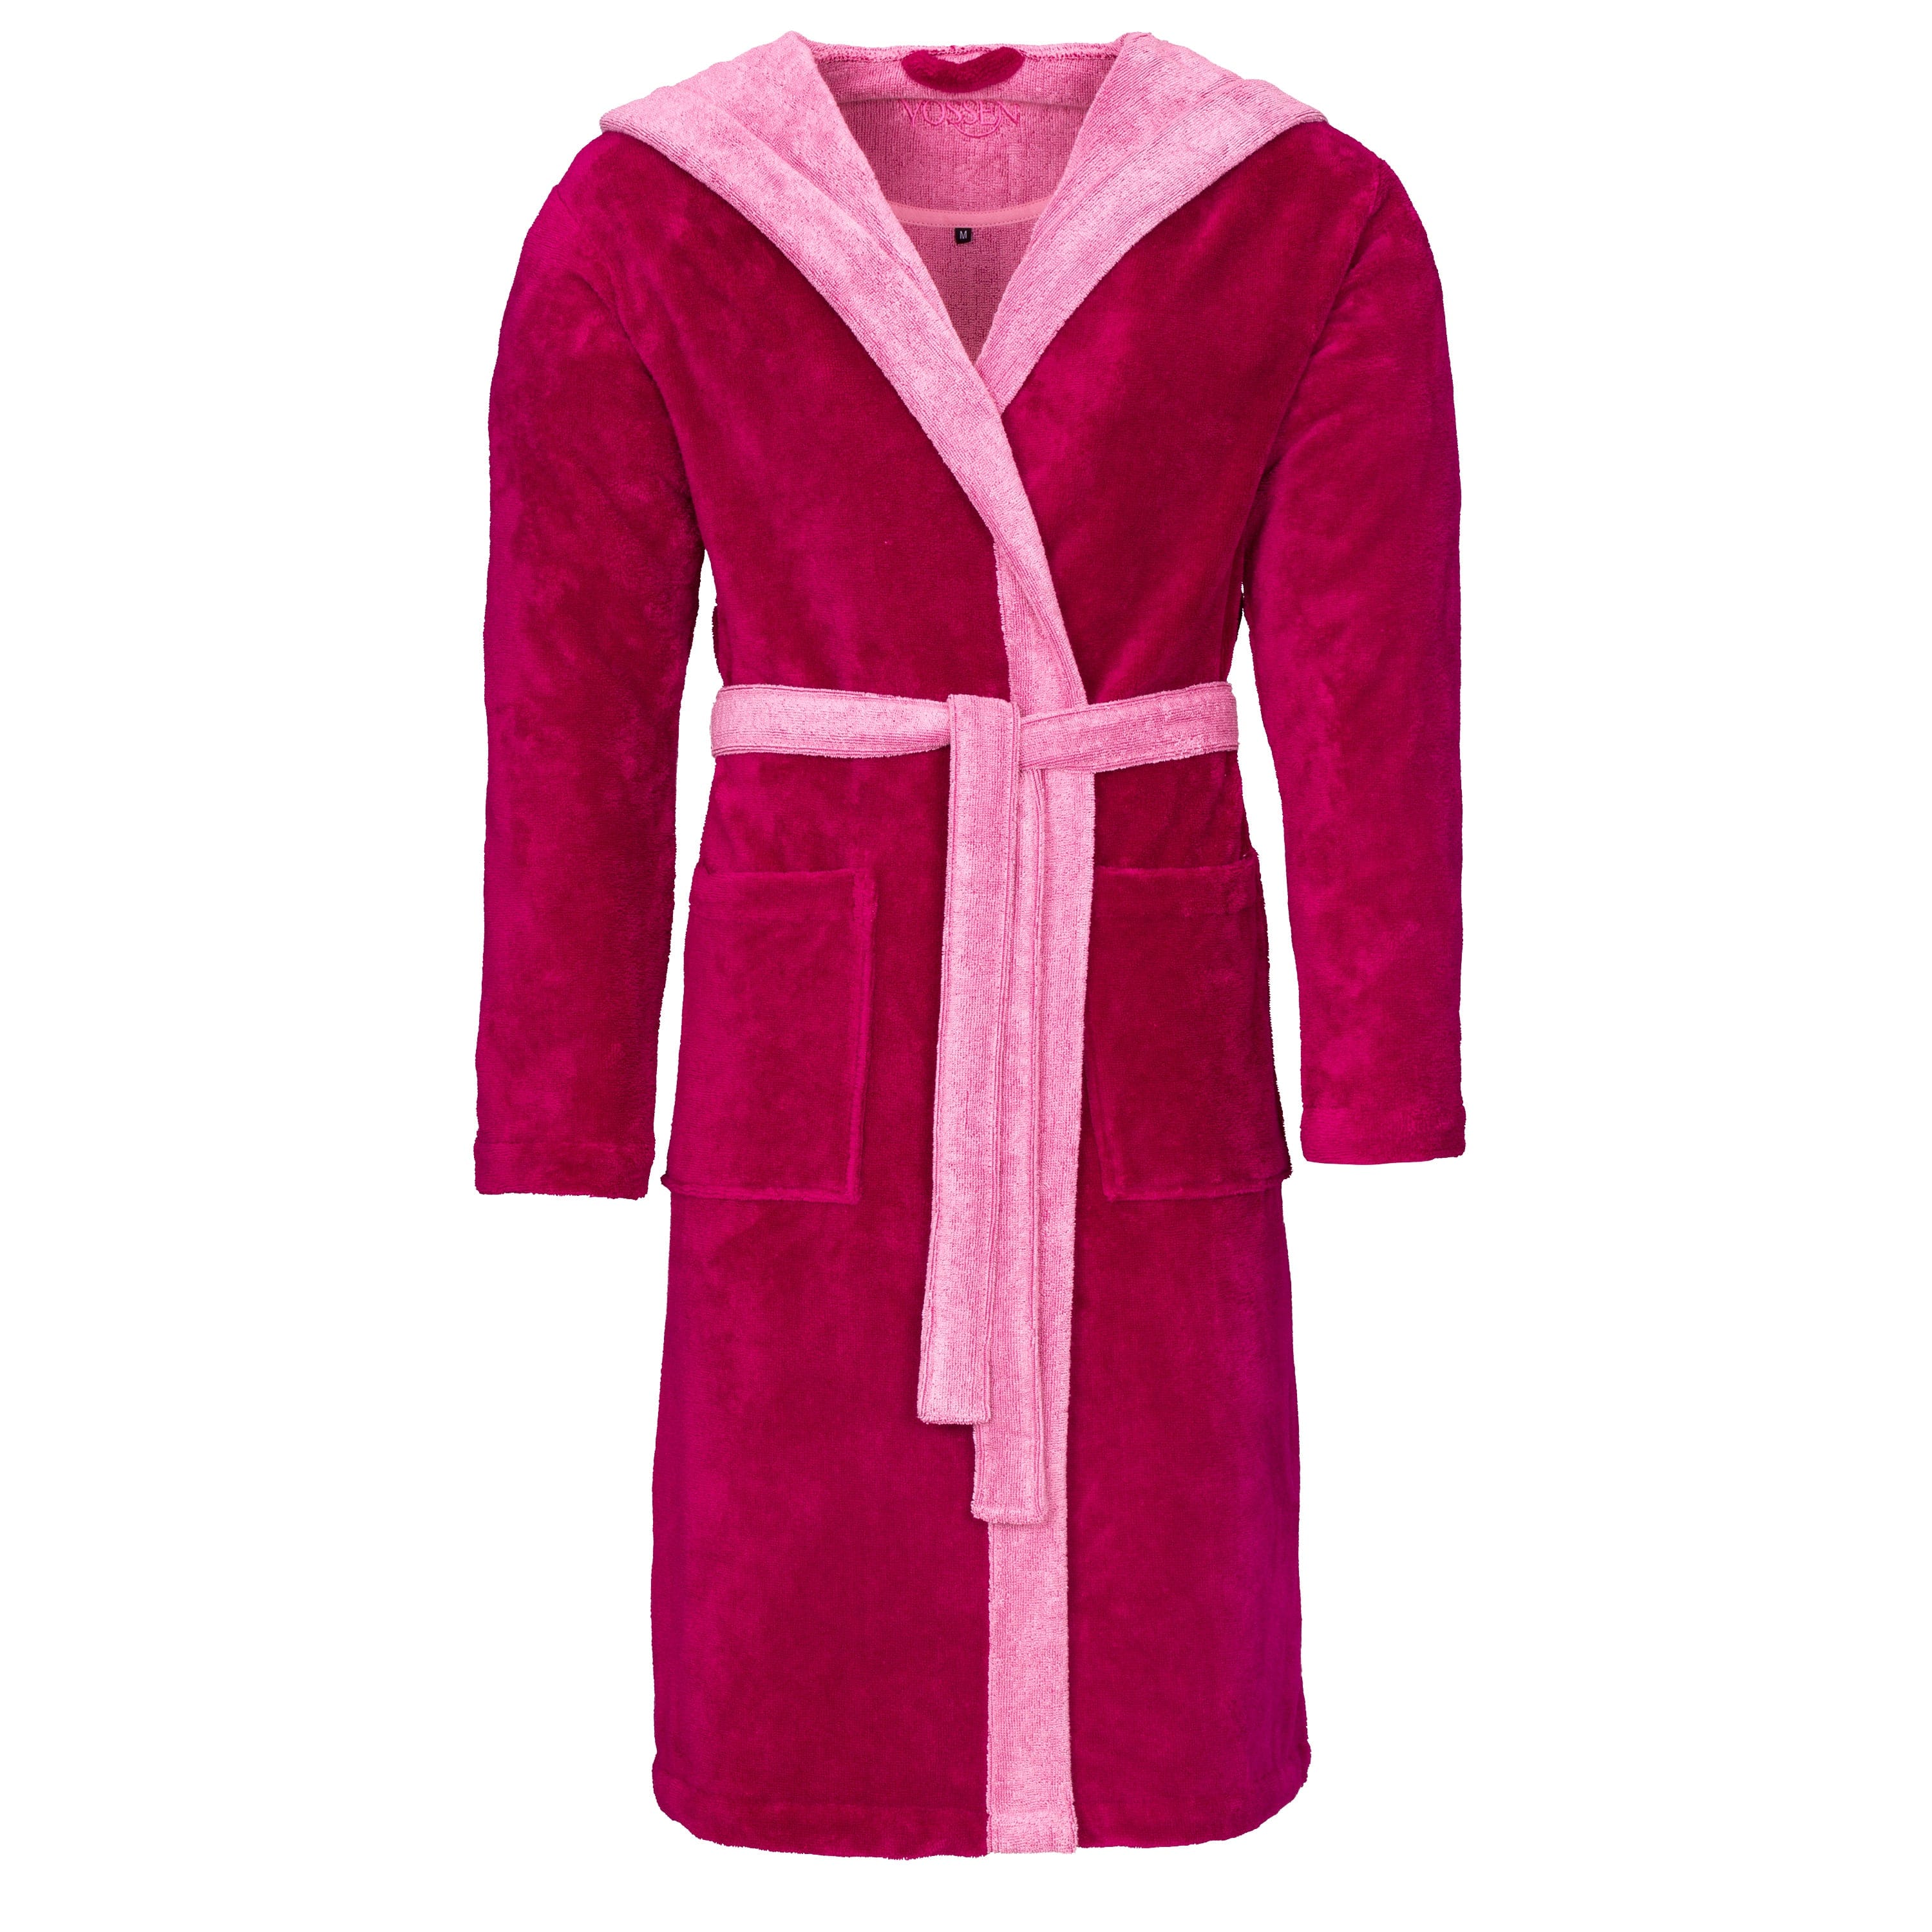 Accappatoio in cotone vegano con cintura e cappuccio in un doppio colore fucsia e rosa per uomo e donna